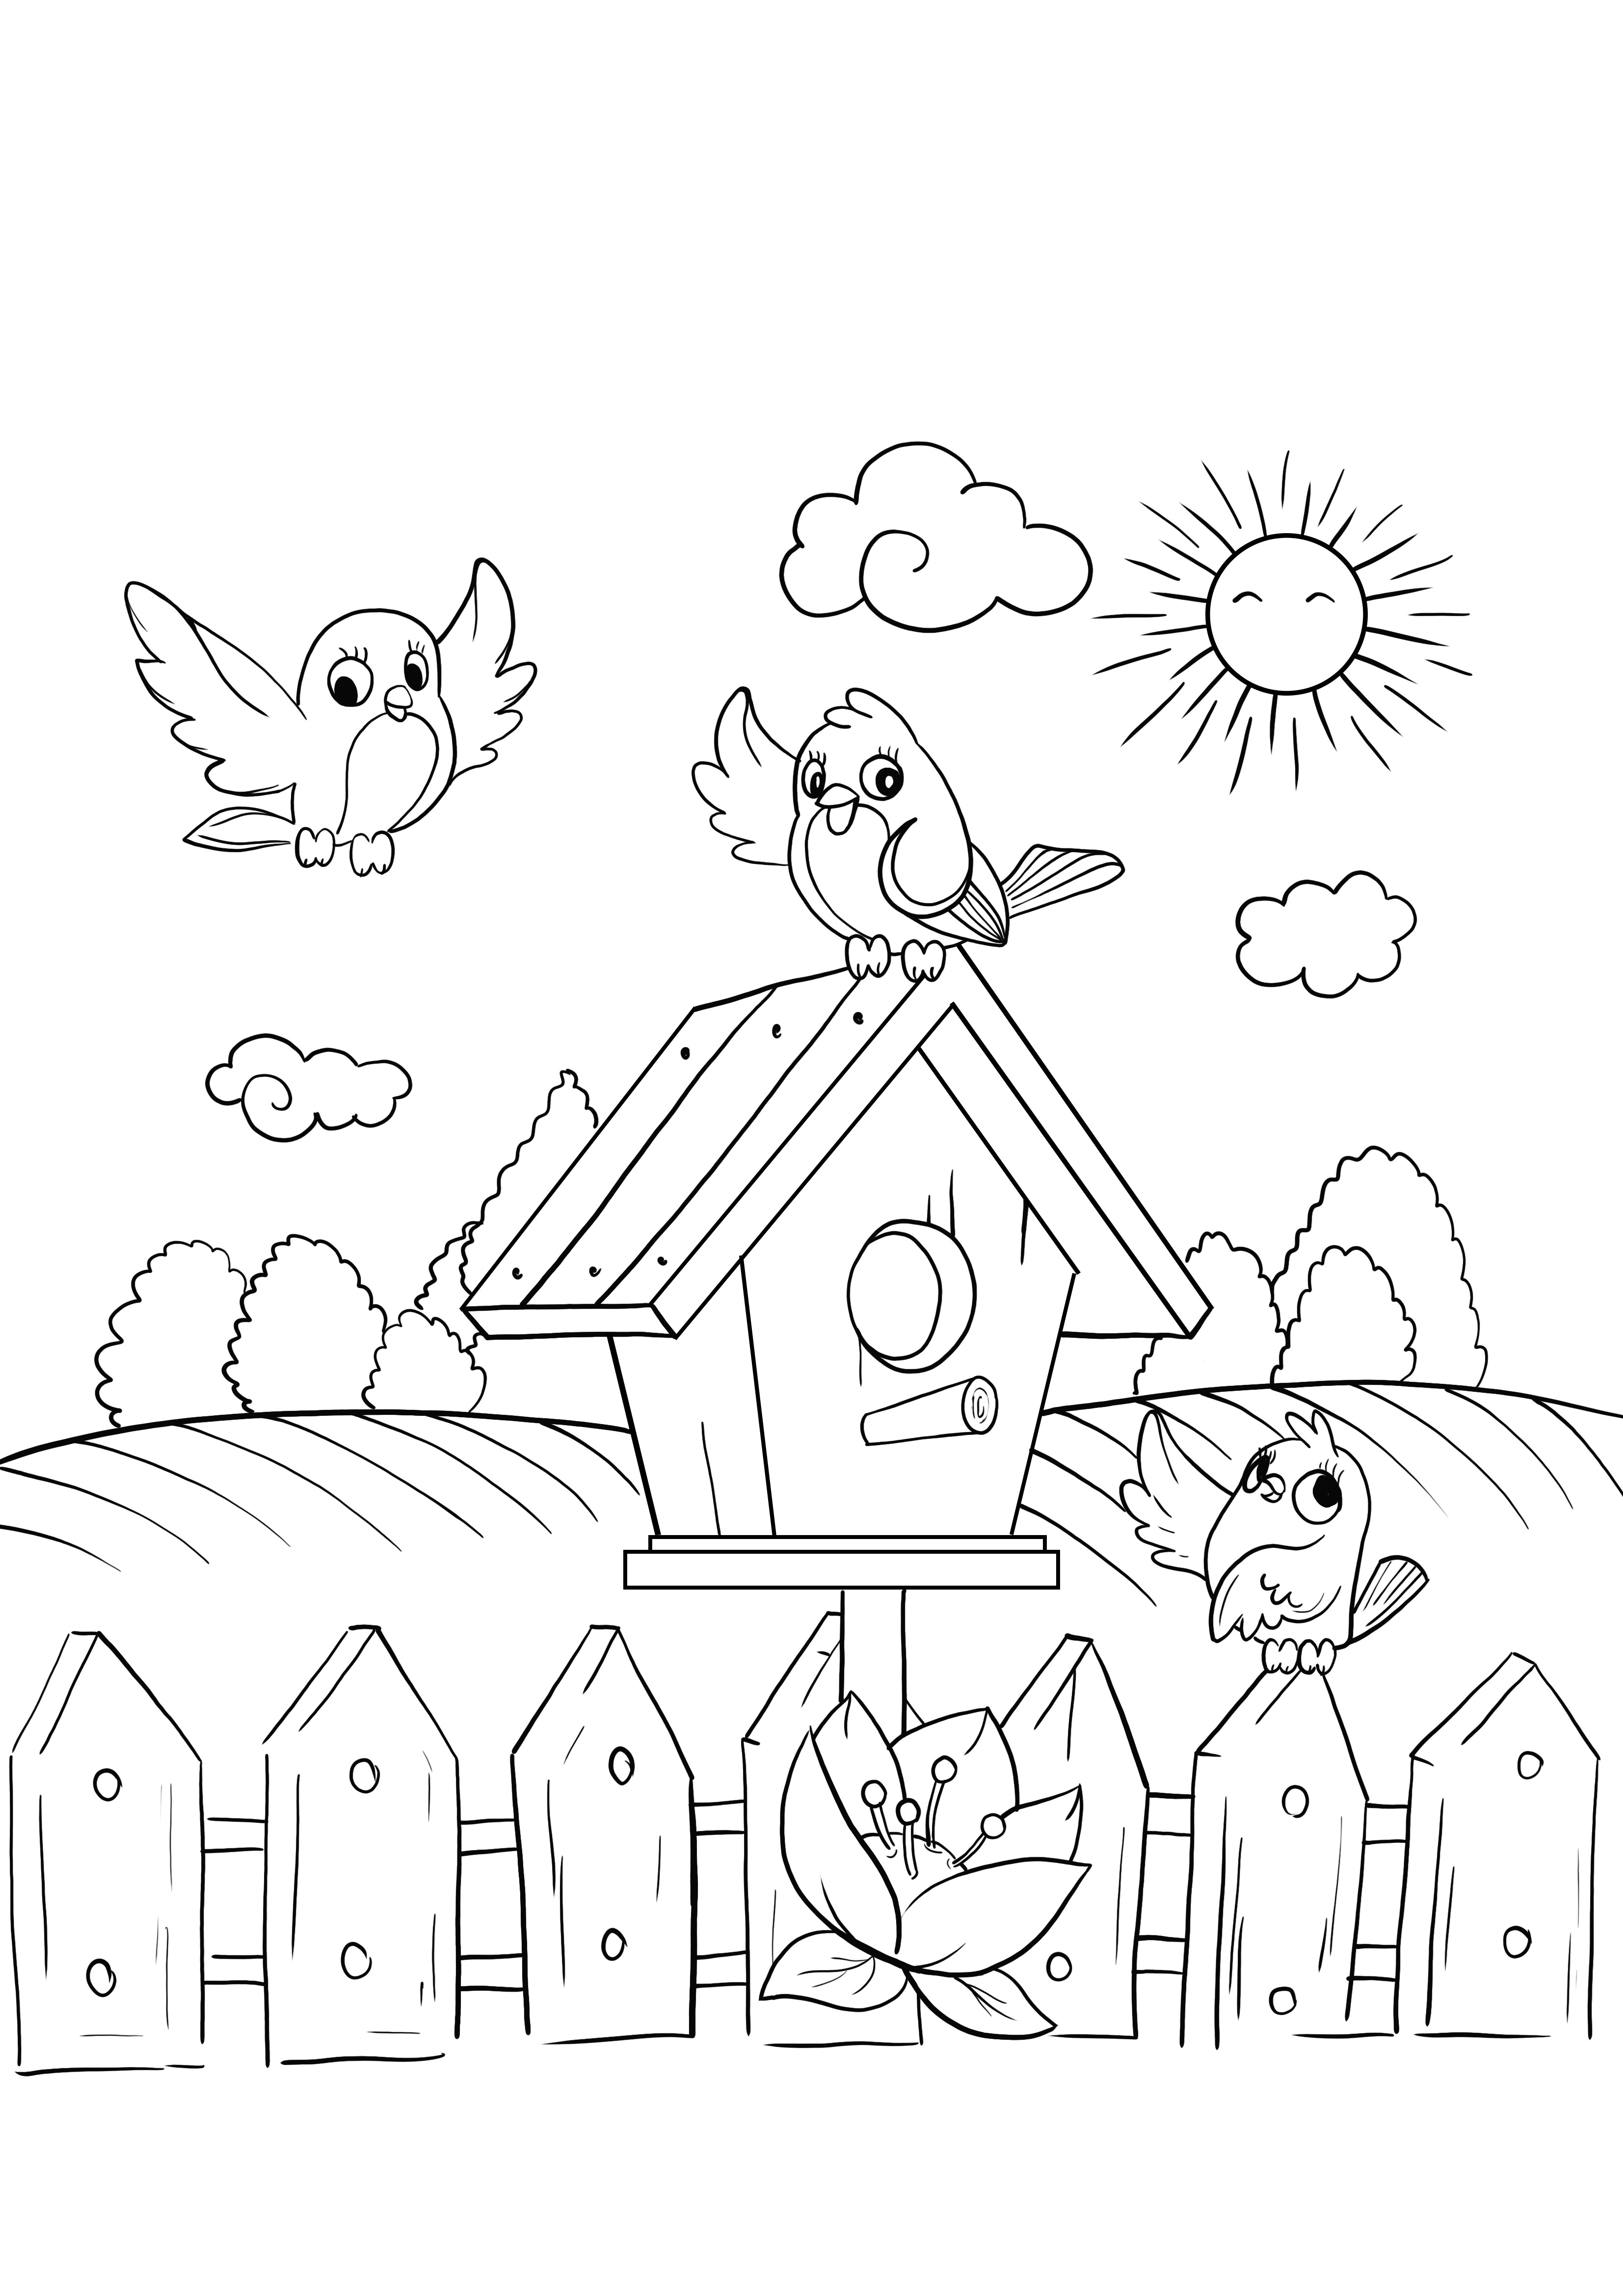 Disegni da colorare e stampare gratis della famiglia degli uccelli